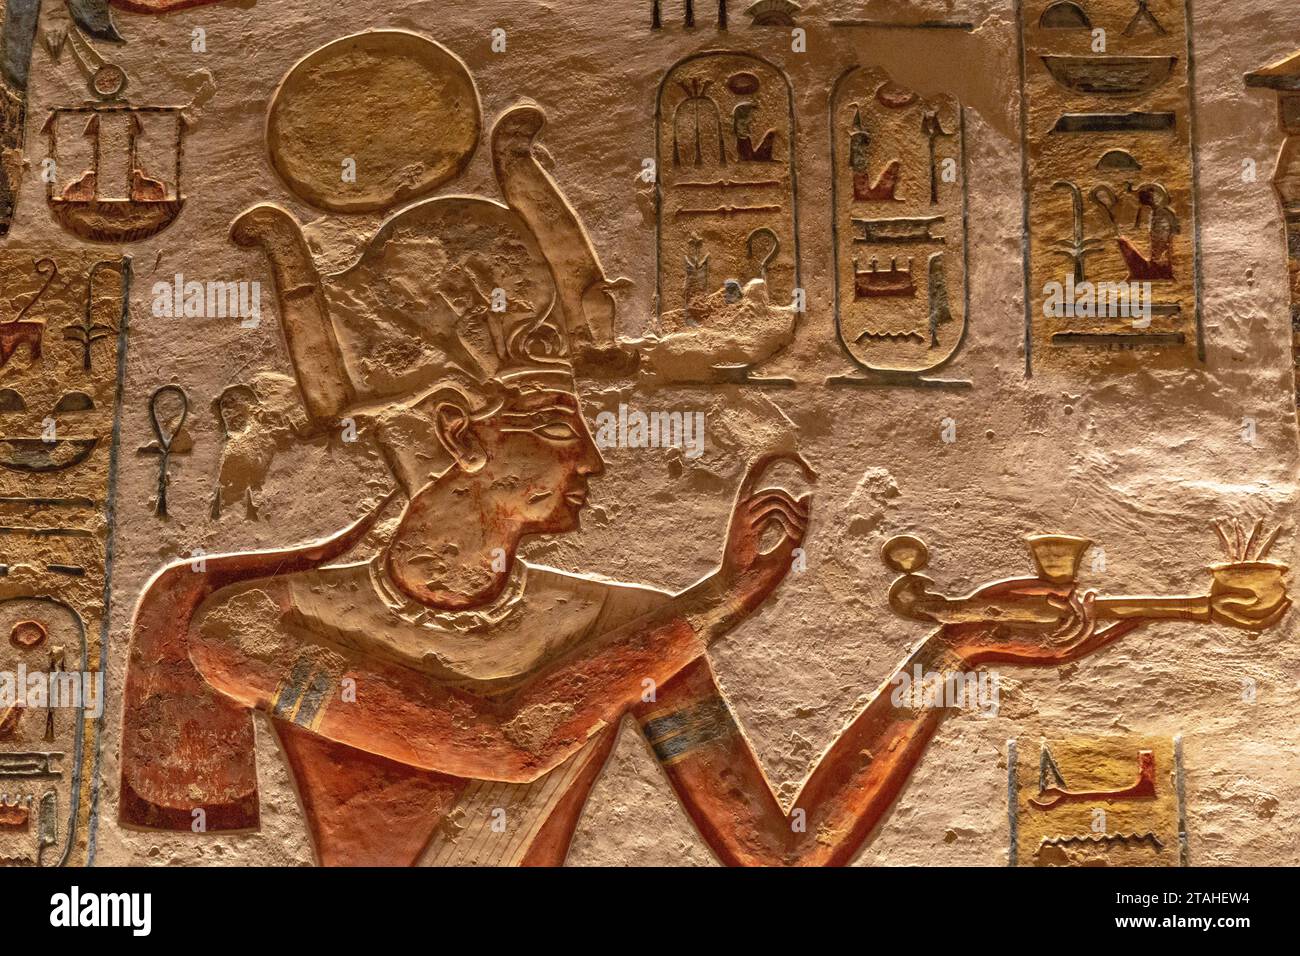 Hiéroglyphe antique trouvé sur les ruines antiques en Egypte Banque D'Images